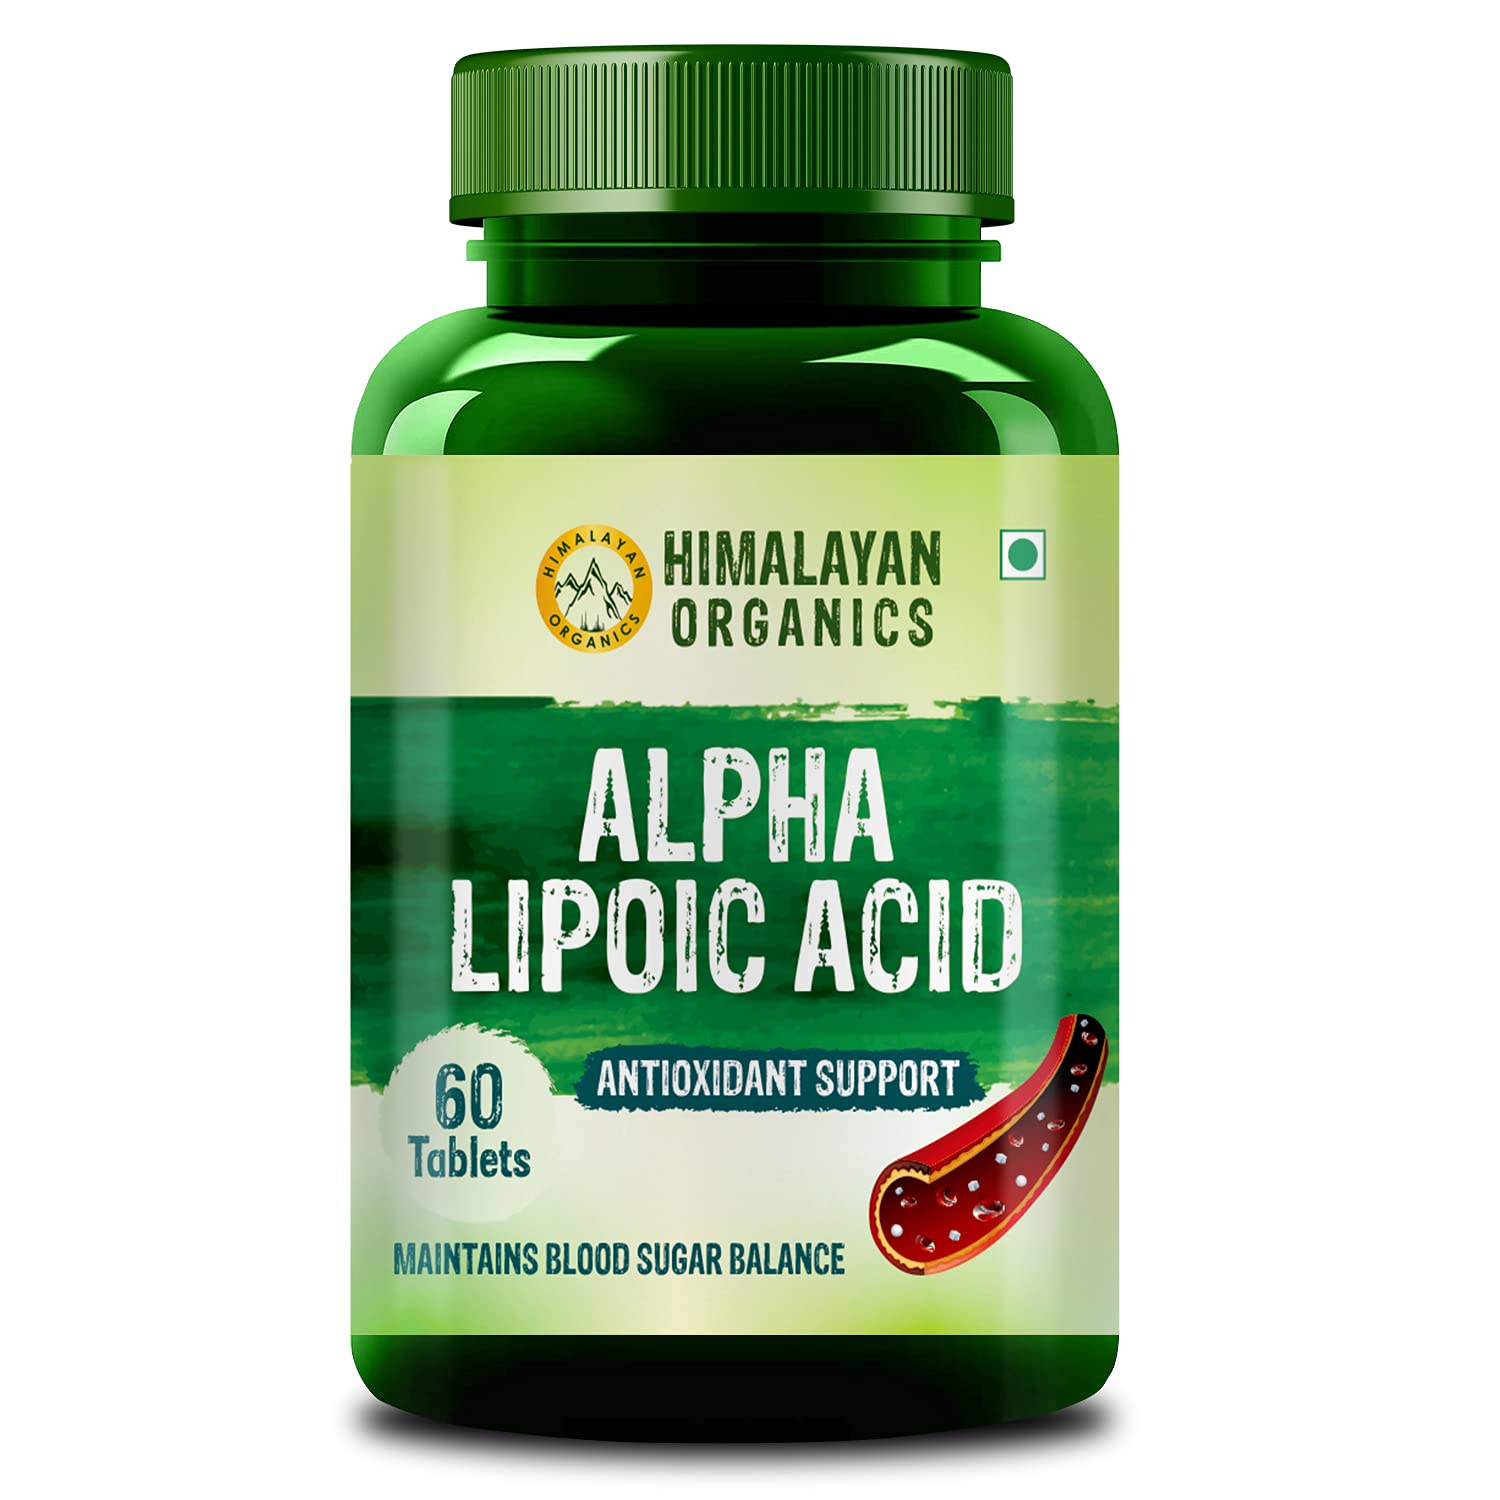 Himalayan Organics Alpha Lipoic Acid Image